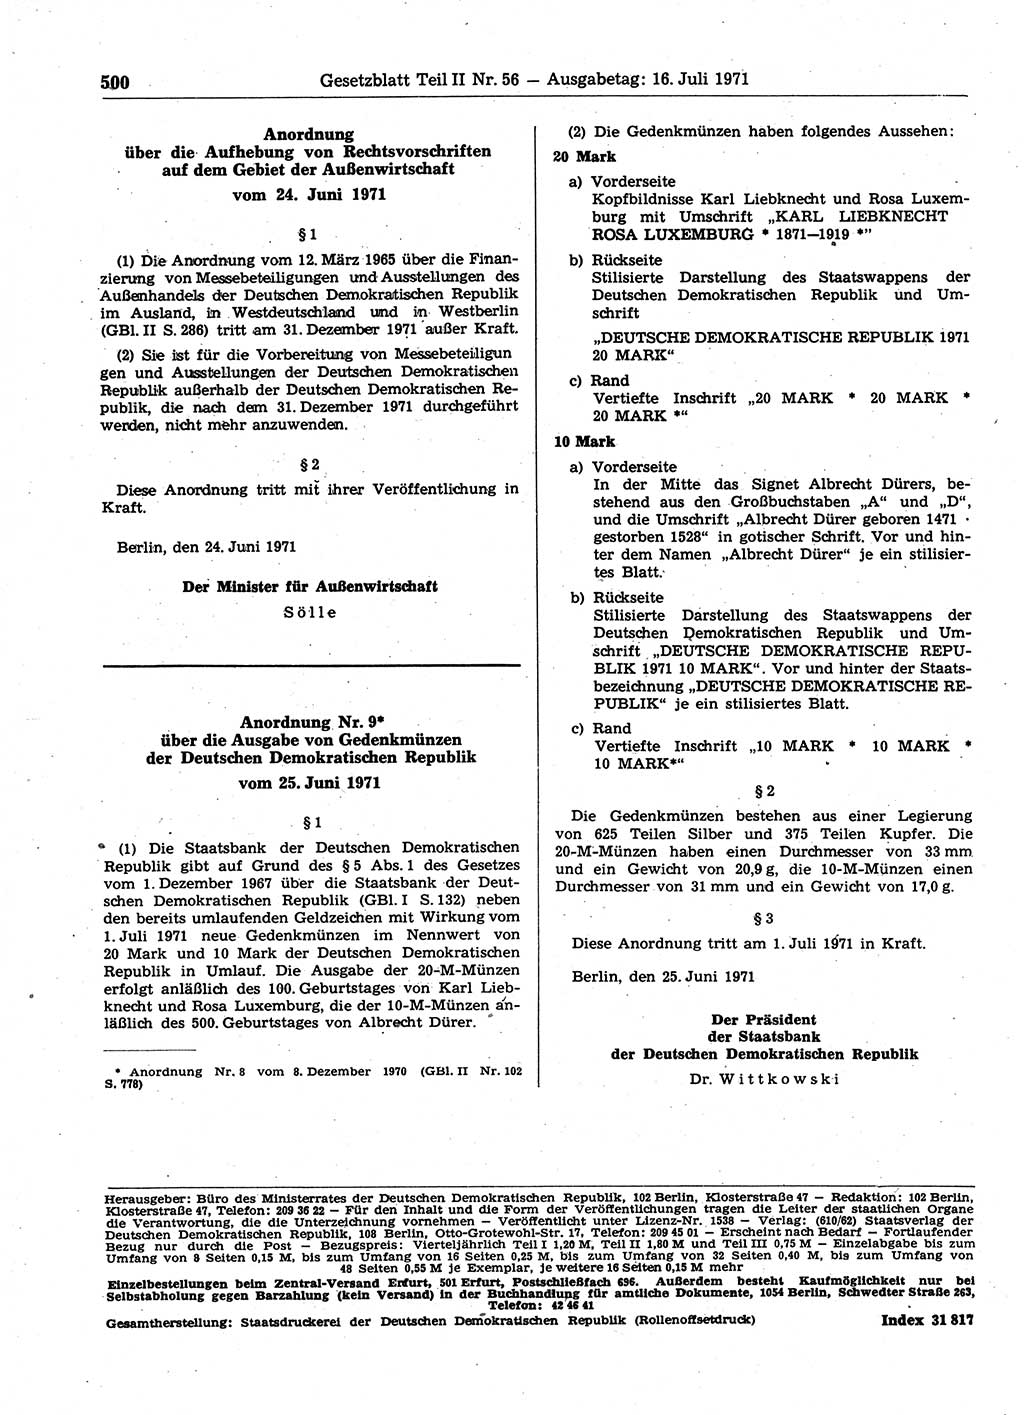 Gesetzblatt (GBl.) der Deutschen Demokratischen Republik (DDR) Teil ⅠⅠ 1971, Seite 500 (GBl. DDR ⅠⅠ 1971, S. 500)